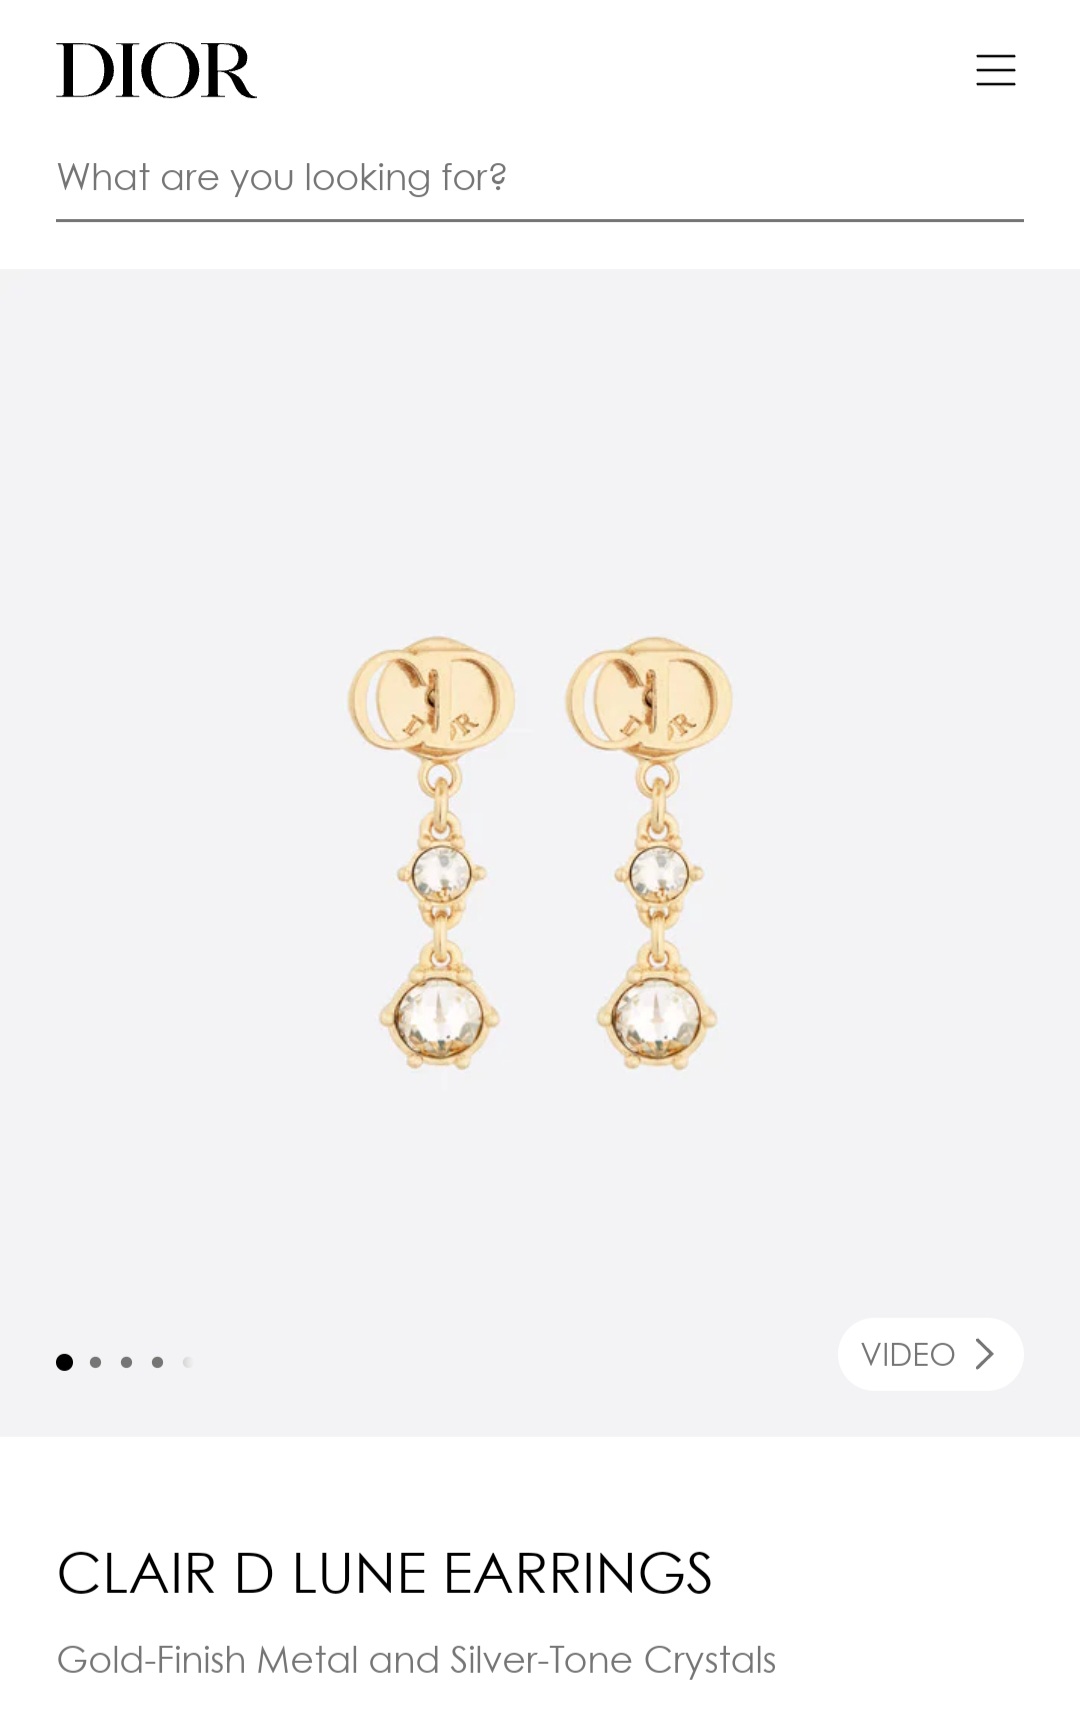 Dior CLAIR D LUNE earrings